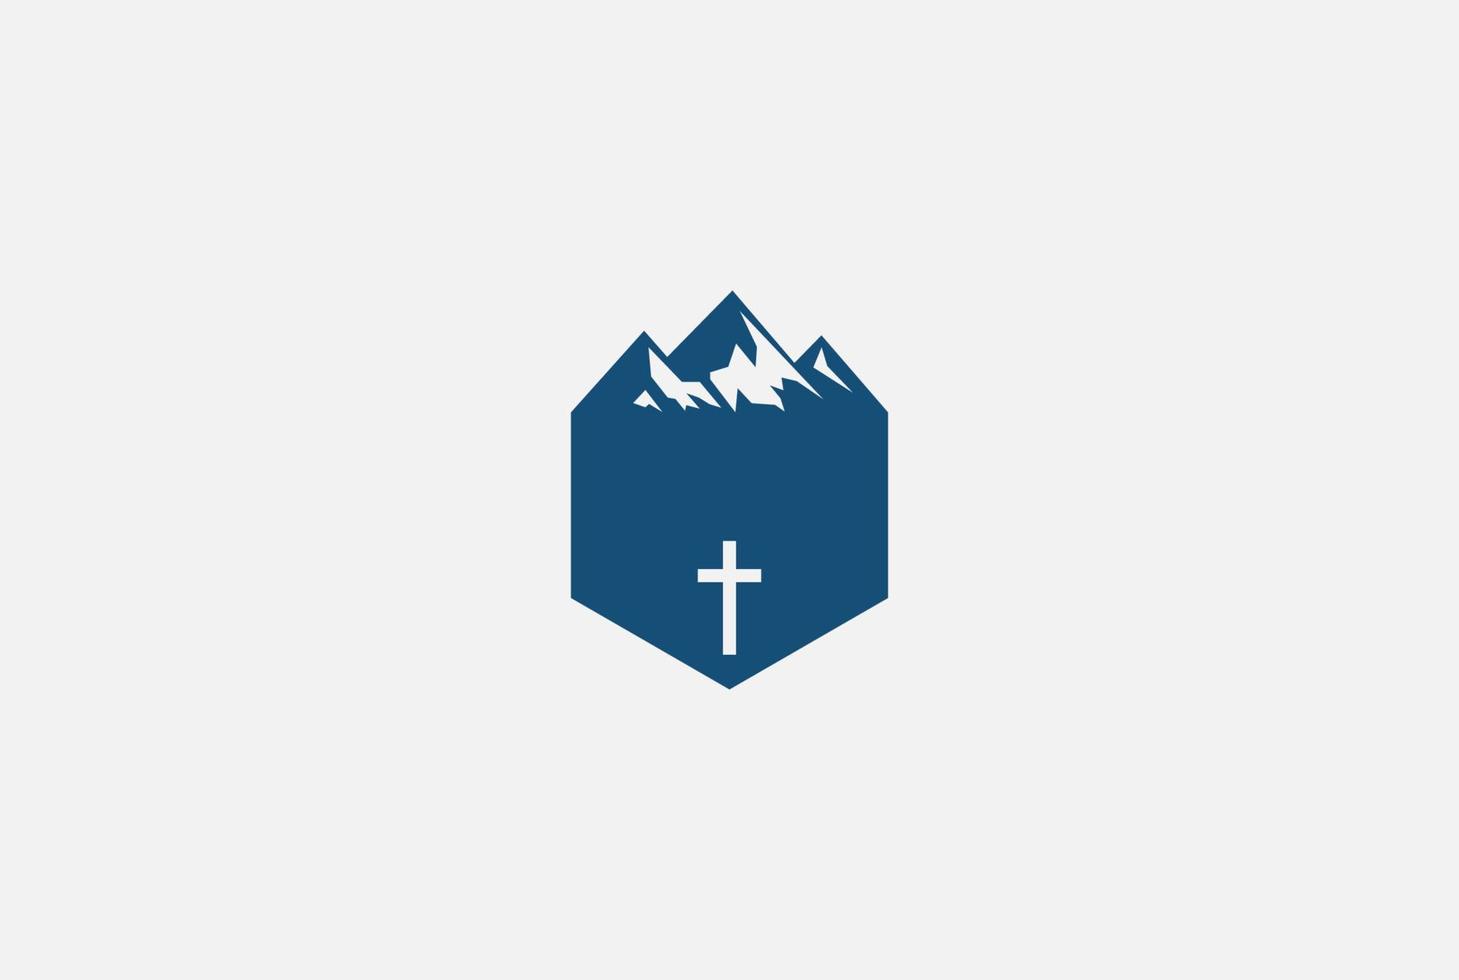 montaña retro vintage con cruz cristiana para iglesia o capilla religión logo diseño vector